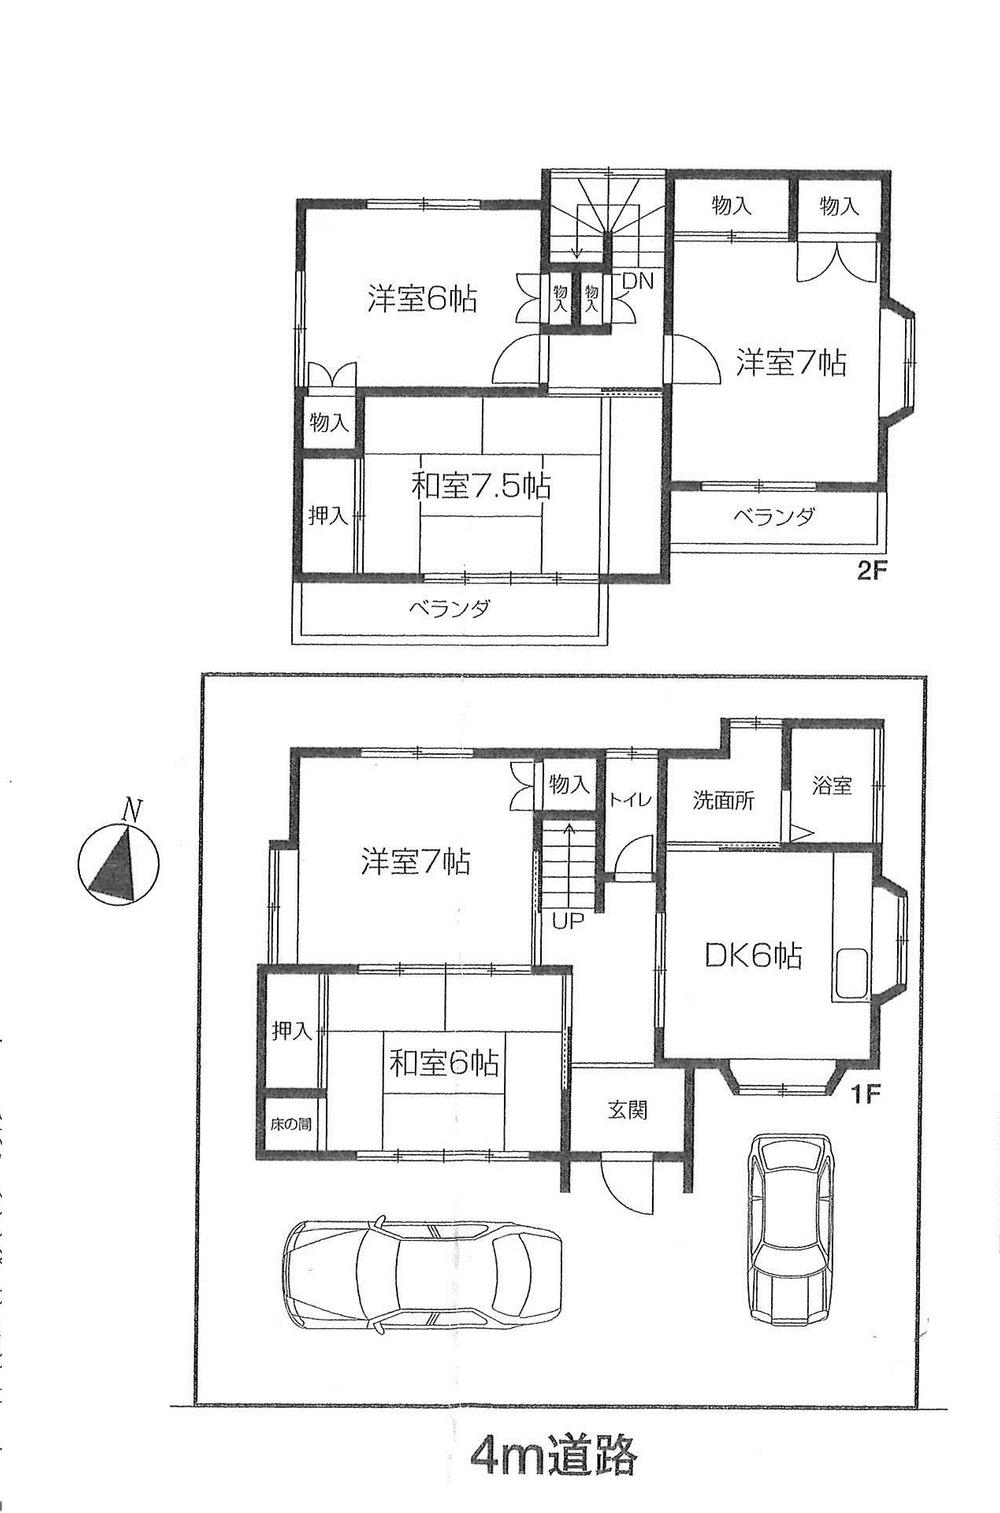 Floor plan. 14.8 million yen, 5DK, Land area 106.8 sq m , Building area 94.84 sq m